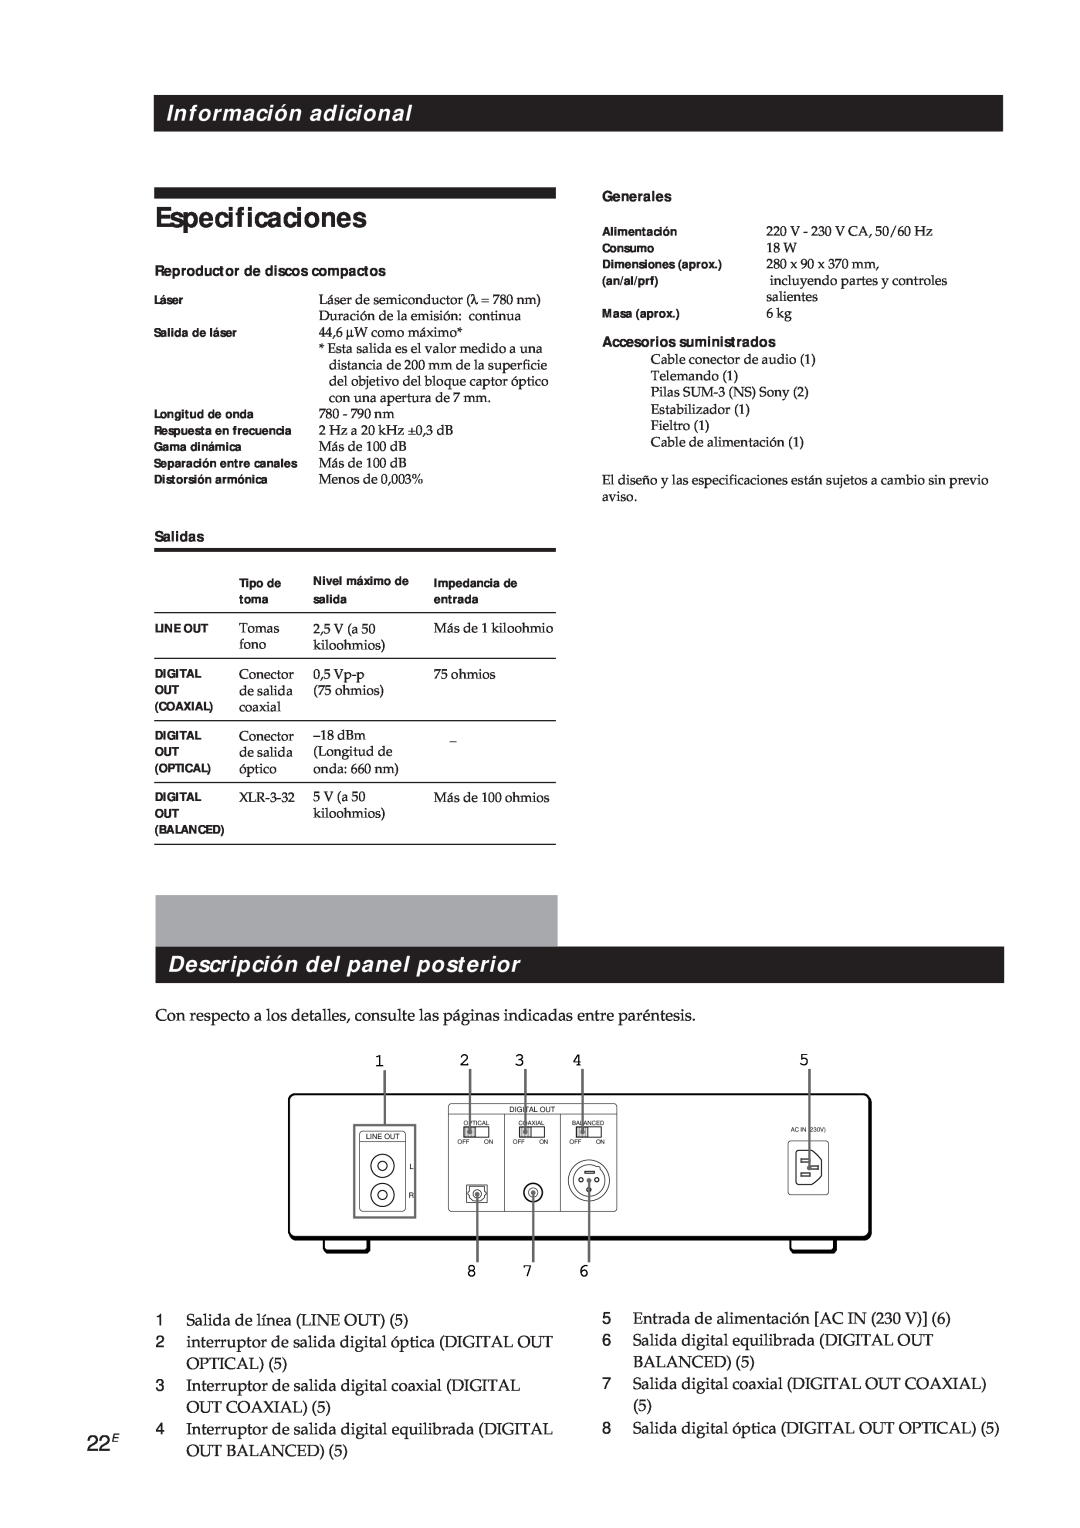 Sony CDP-X5000 Especificaciones, Información adicional, Descripción del panel posterior, Reproductor de discos compactos 